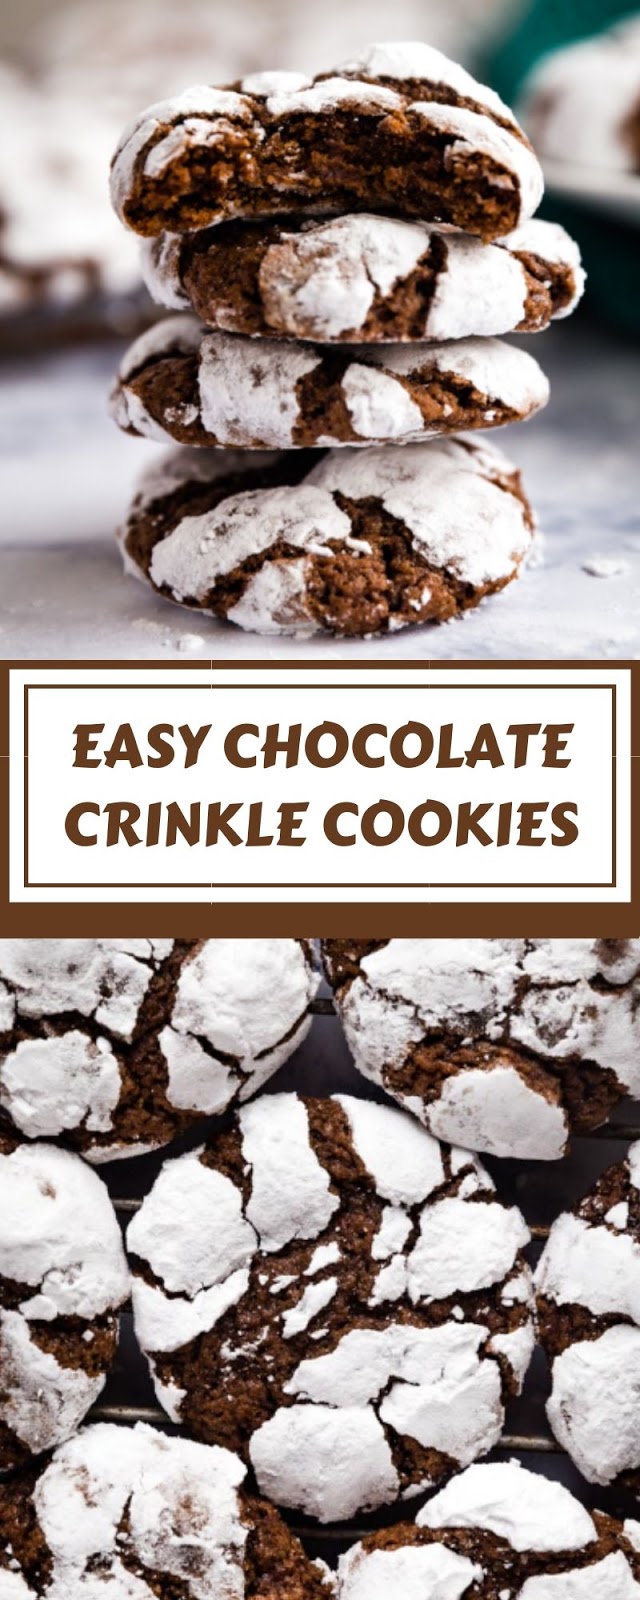 EASY CHOCOLATE CRINKLE COOKIES